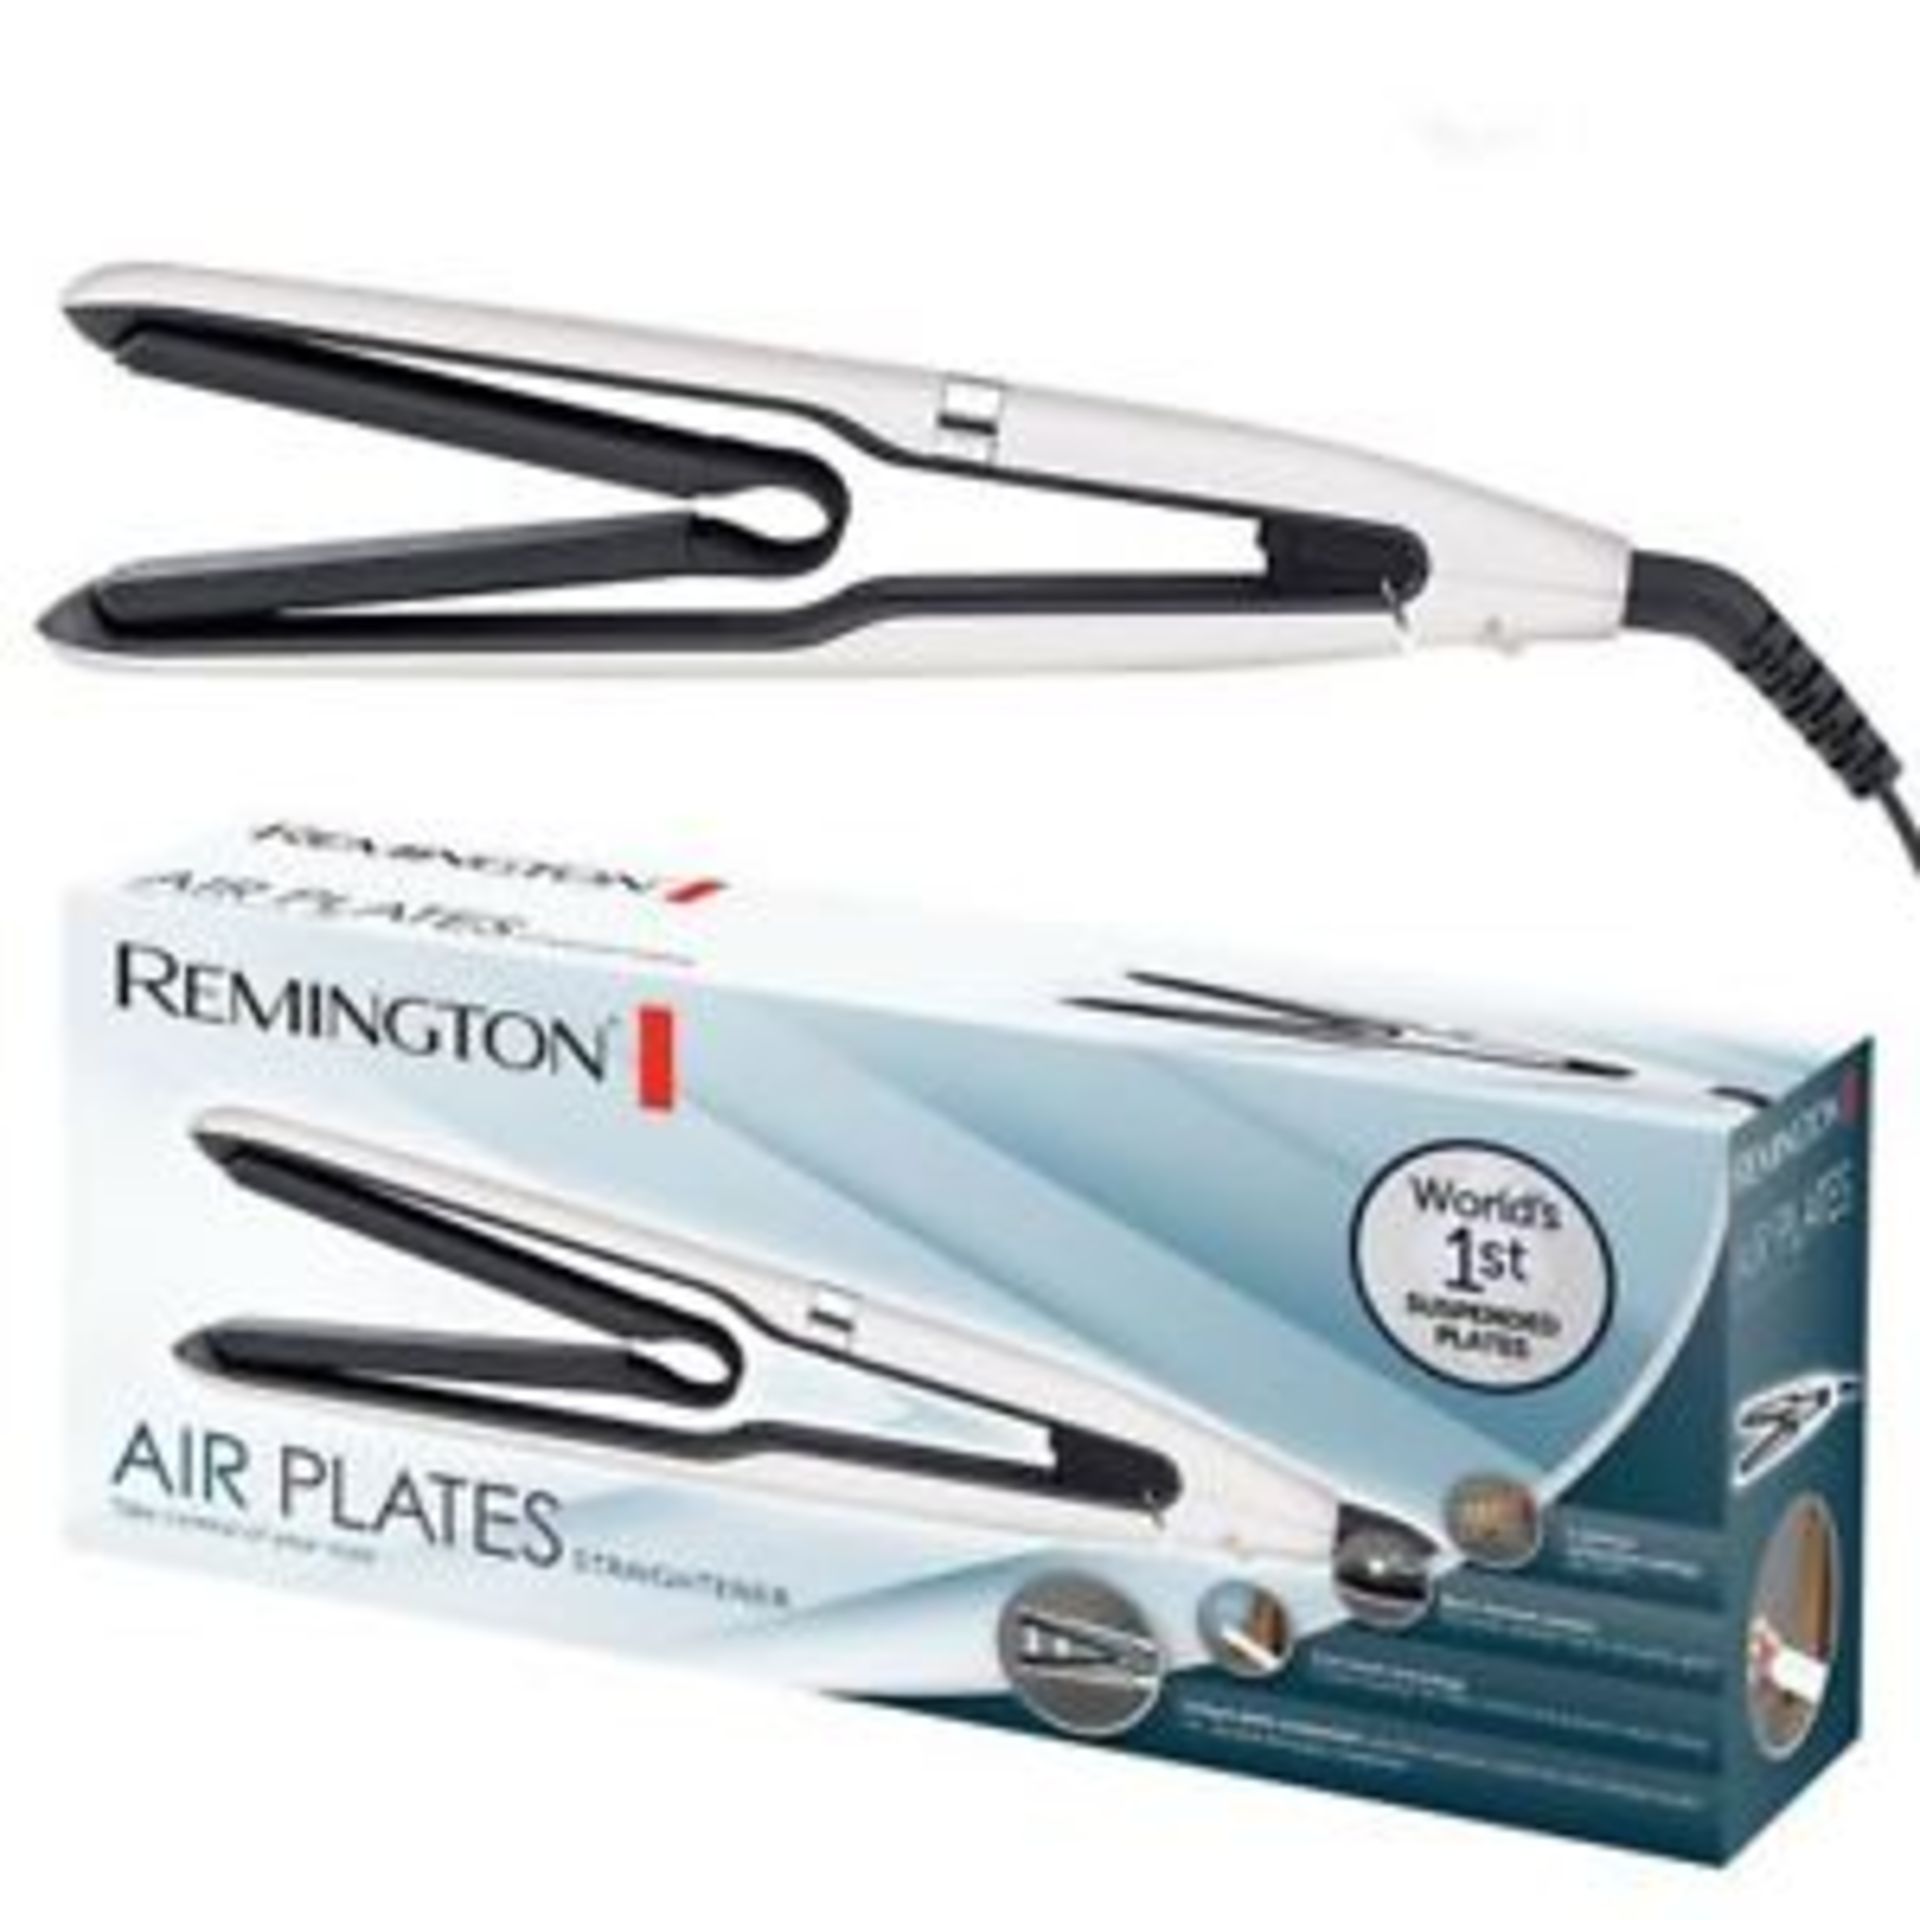 + VAT Brand New Remington Air Plates Straightener - Argos Price £79.99 - 5 Optimum Temperature - Image 2 of 2